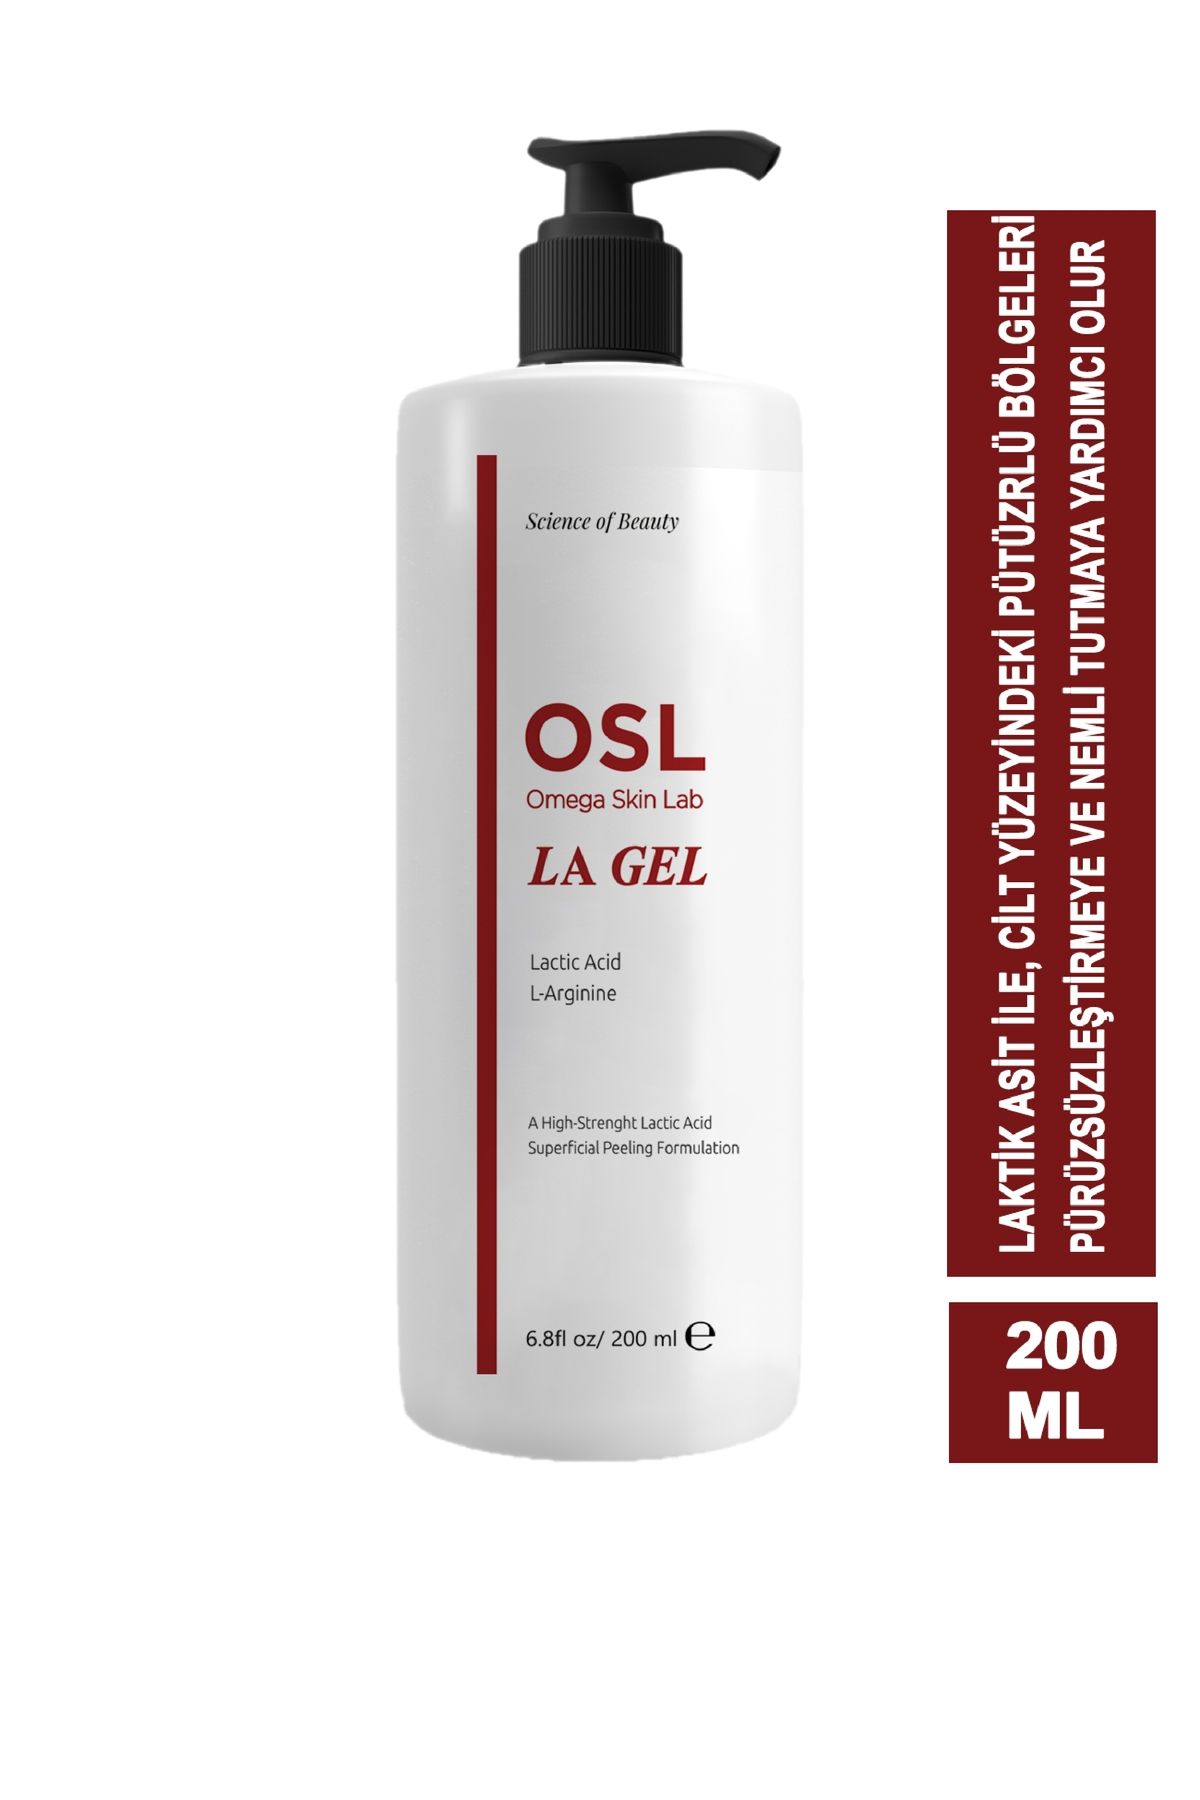 OSL Omega Skin Lab La Gel 200 ml (KERATOSİS PİLARİS, TAVUK DERİSİ GÖRÜNÜMÜ, HÜCRE YENİLENMESİ)